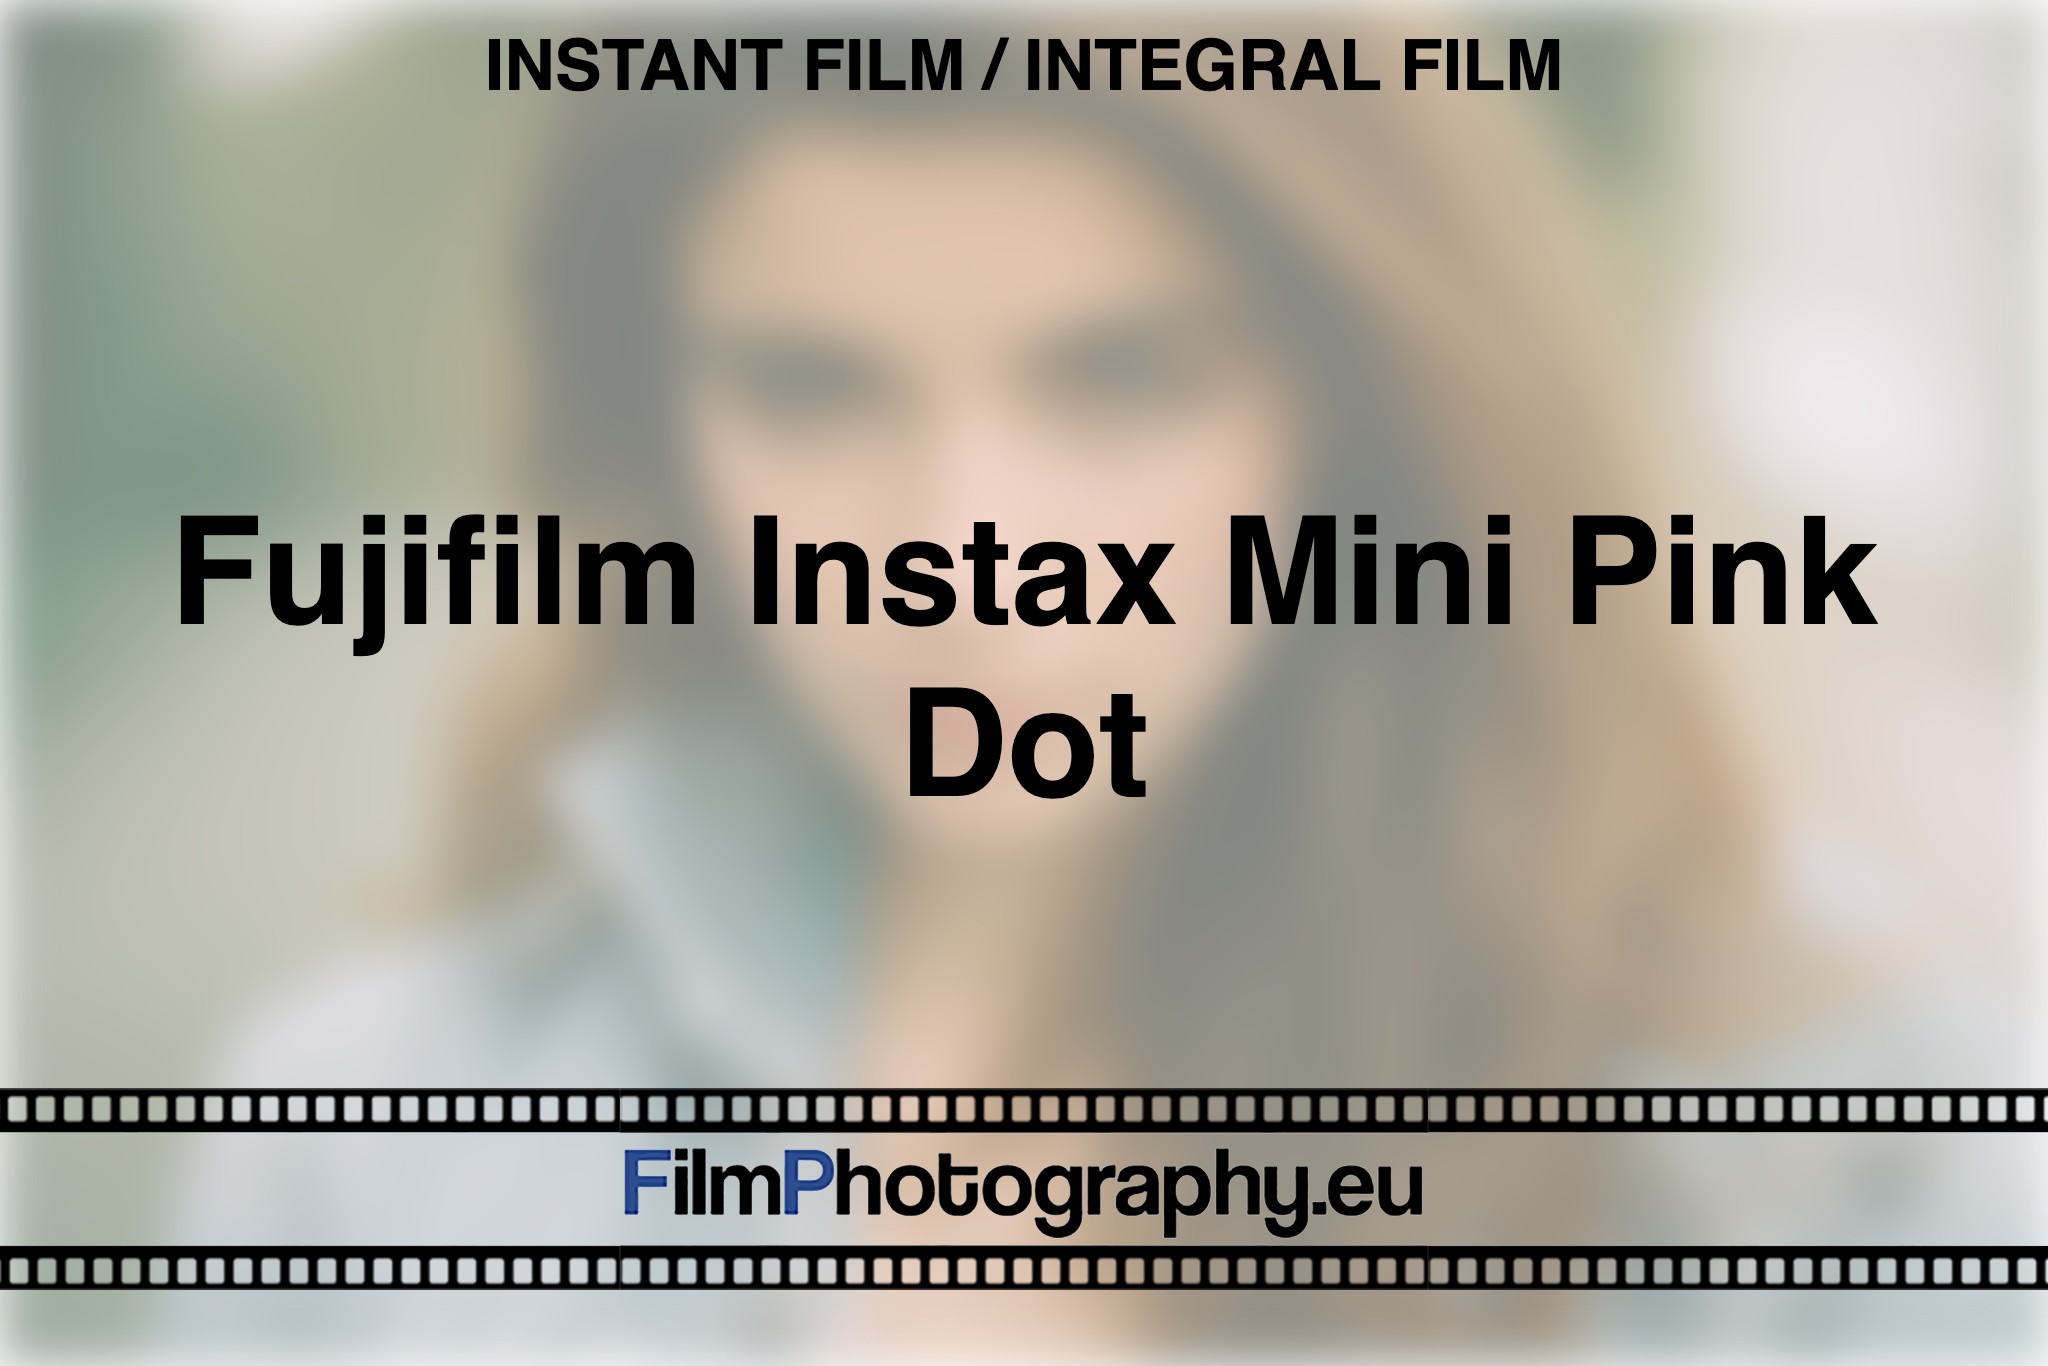 fujifilm-instax-mini-pink-dot-instant-film-integral-film-bnv